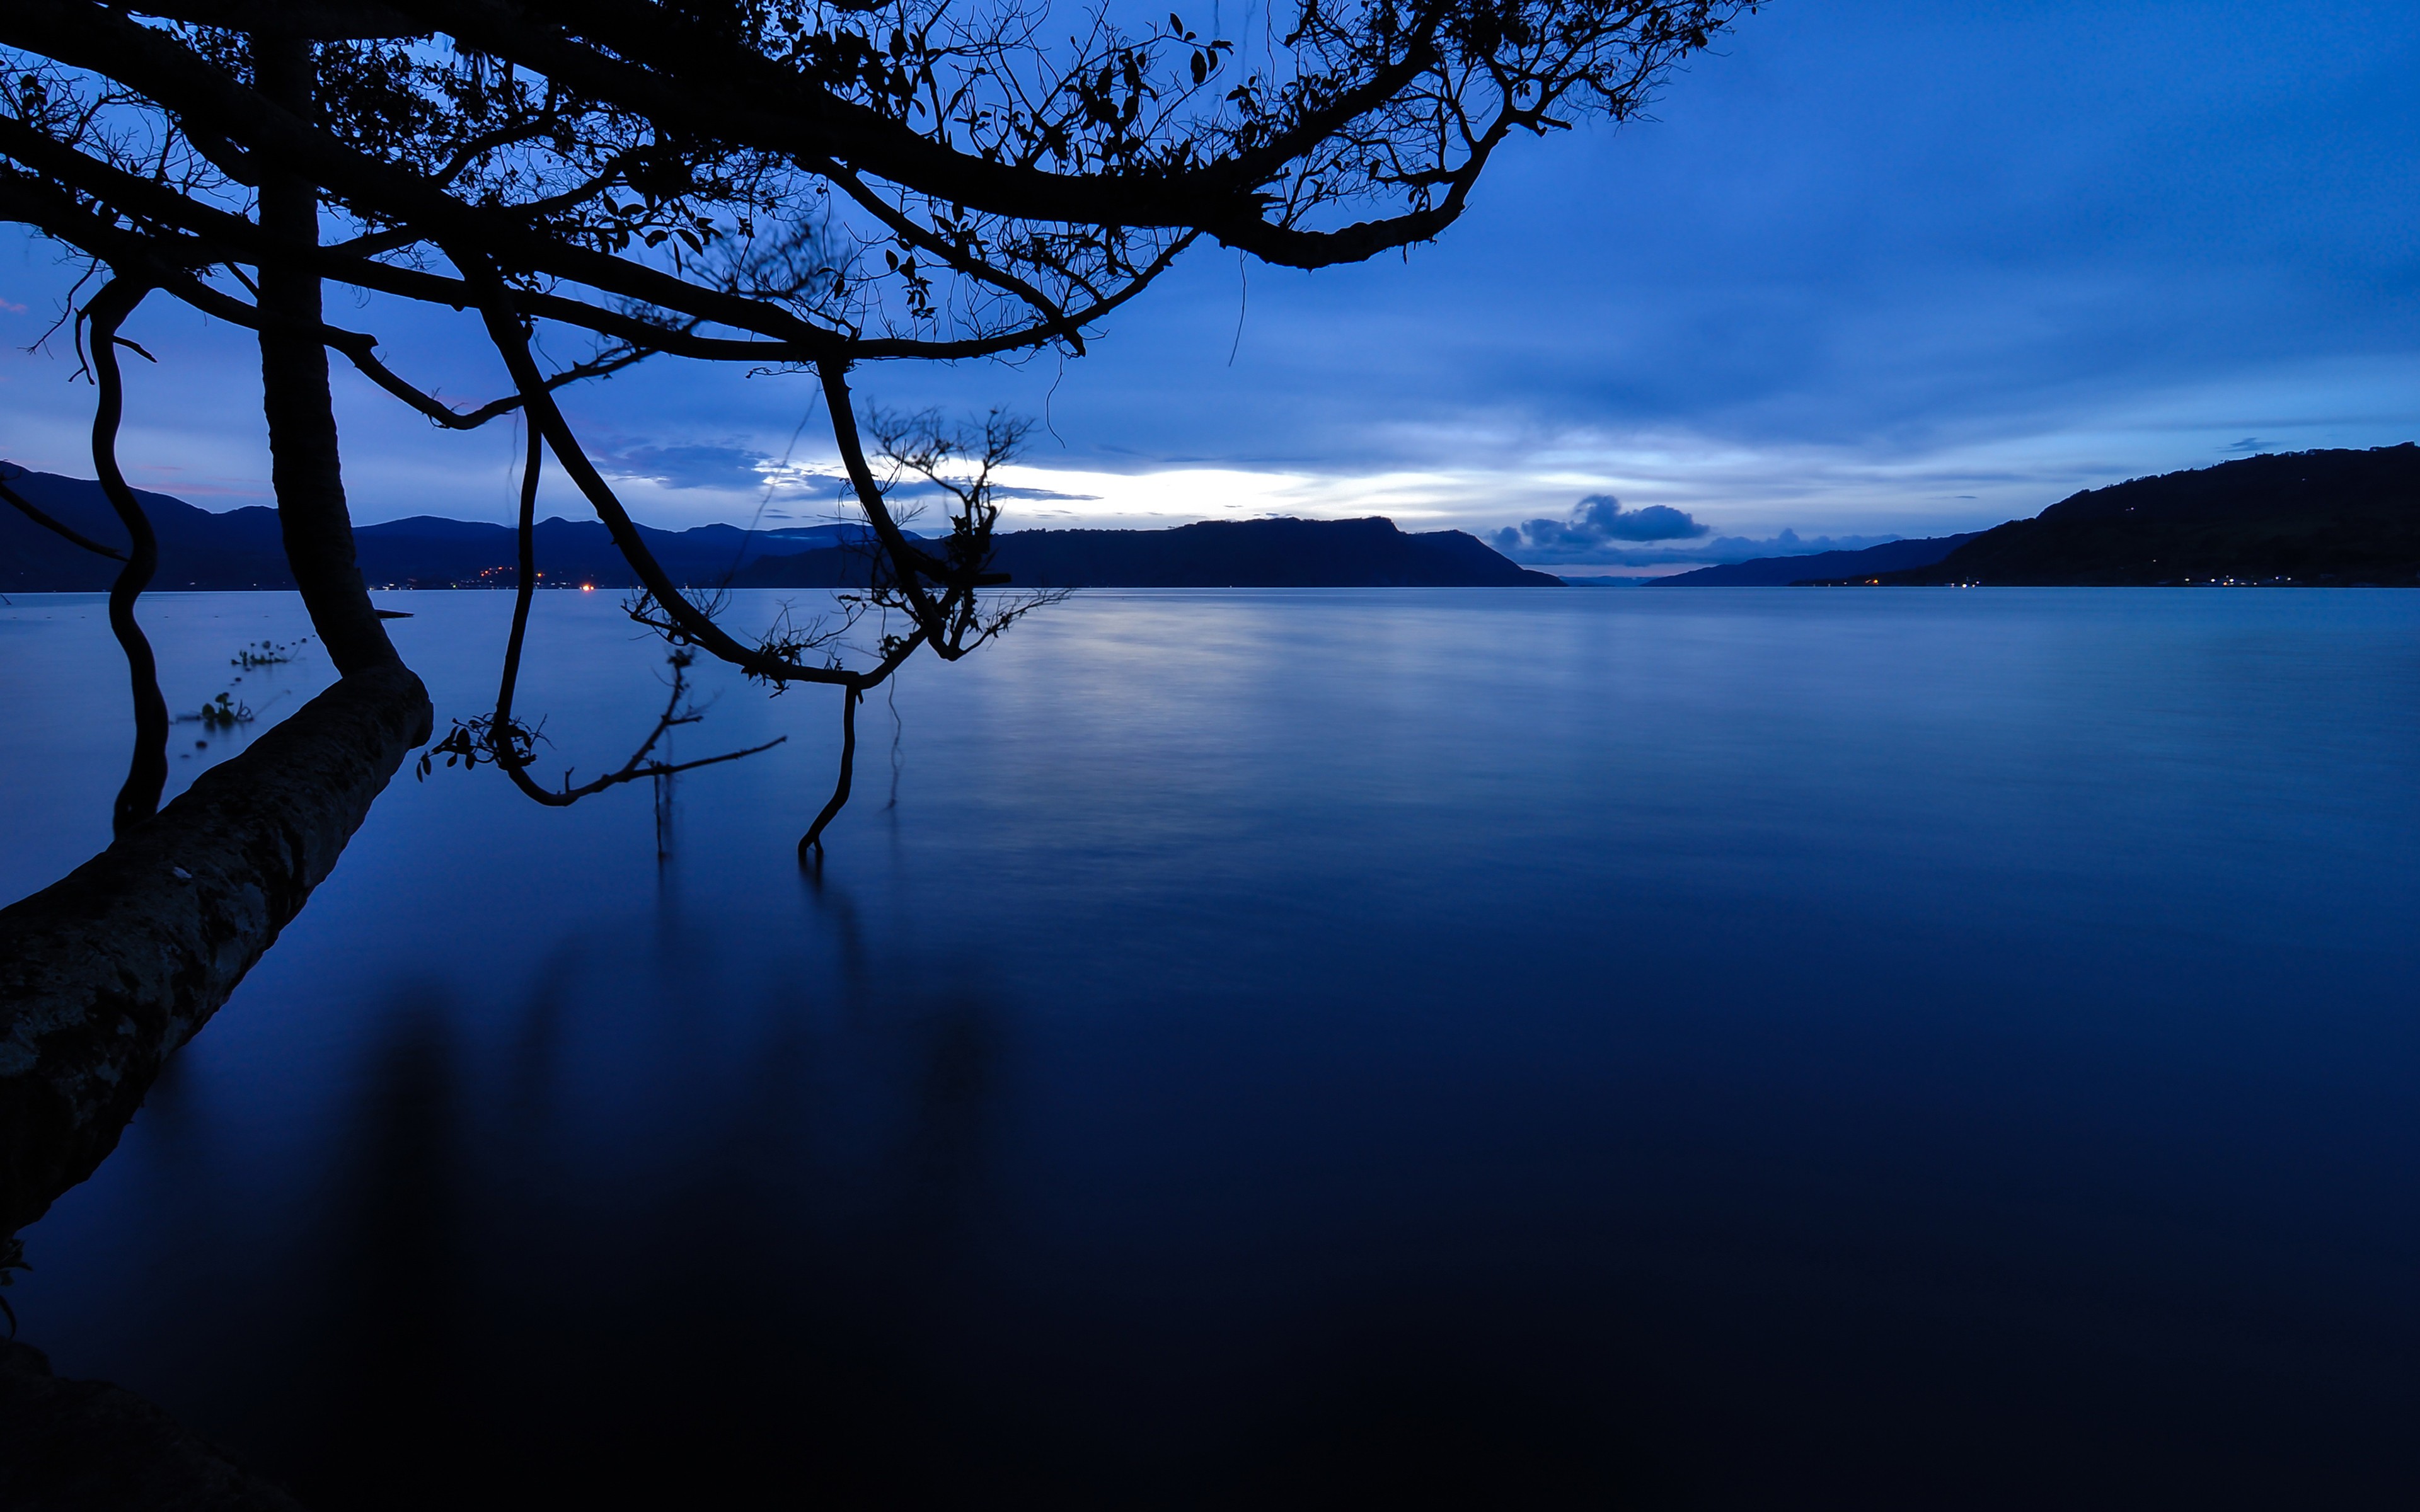 Спокойные темы. Ночное озеро. Спокойное озеро. Пейзаж в синих тонах. Пейзажи в темных тонах.